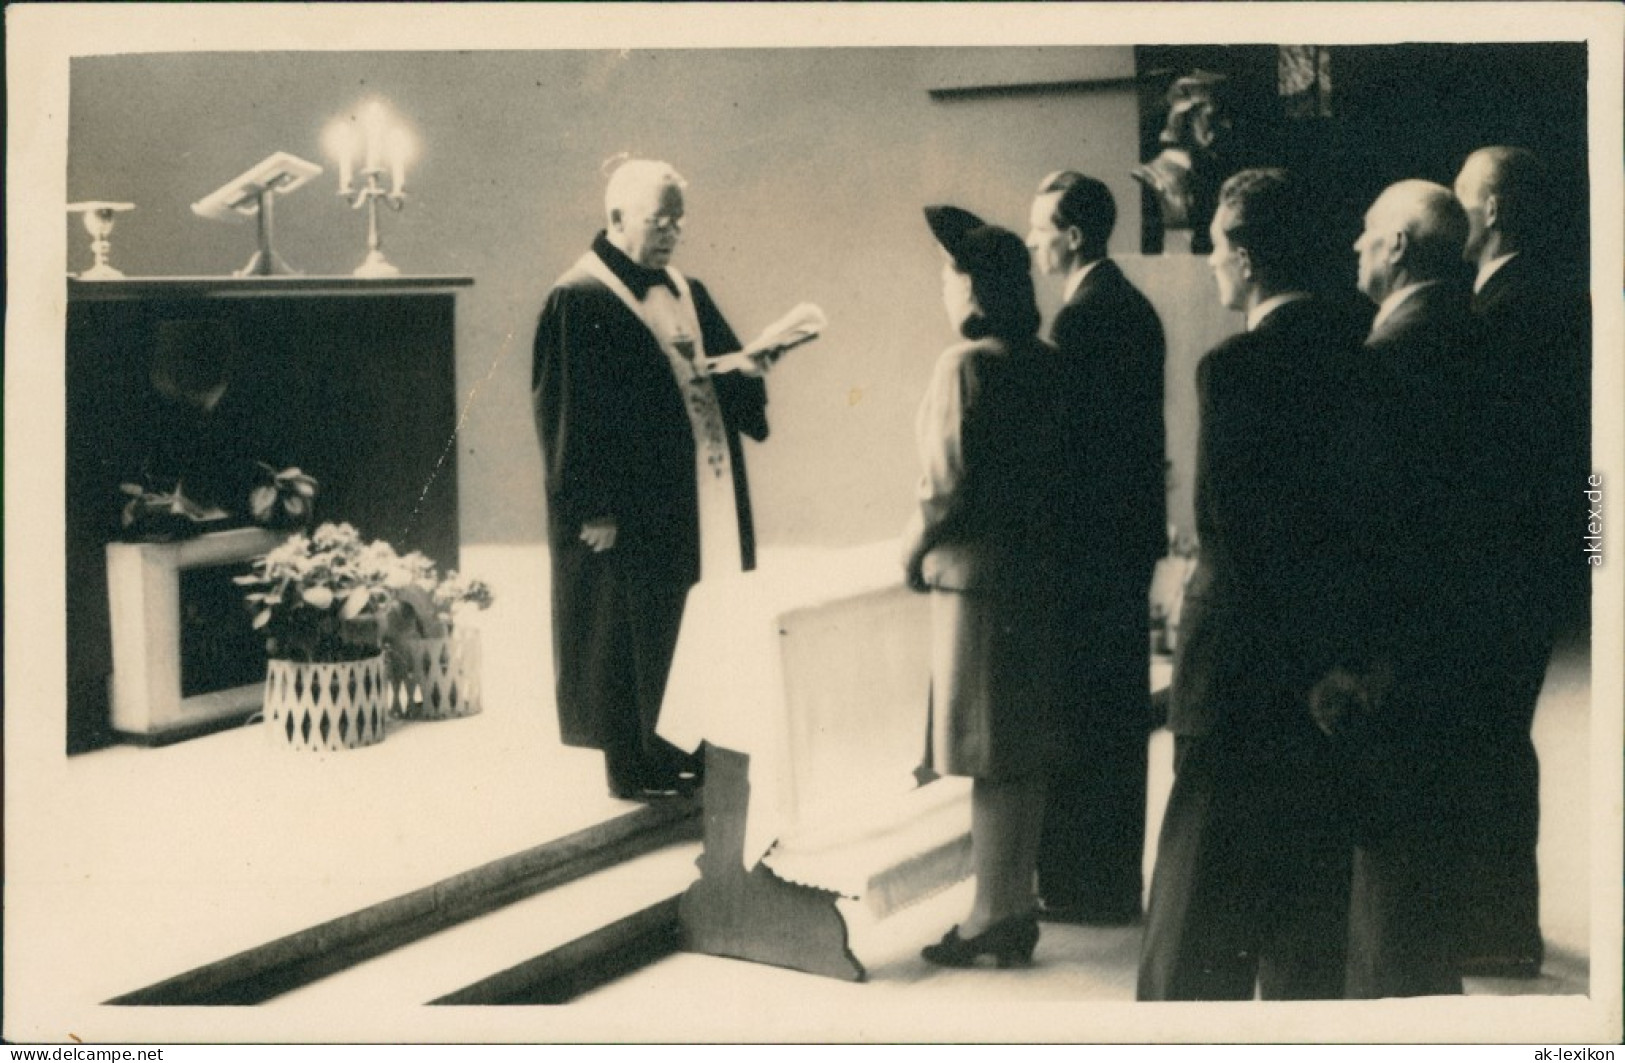  Hochzeit - Gruppenfotos - Trauung Mit Pfarrer Und Trauzeugen 1948 Privatfoto  - Hochzeiten